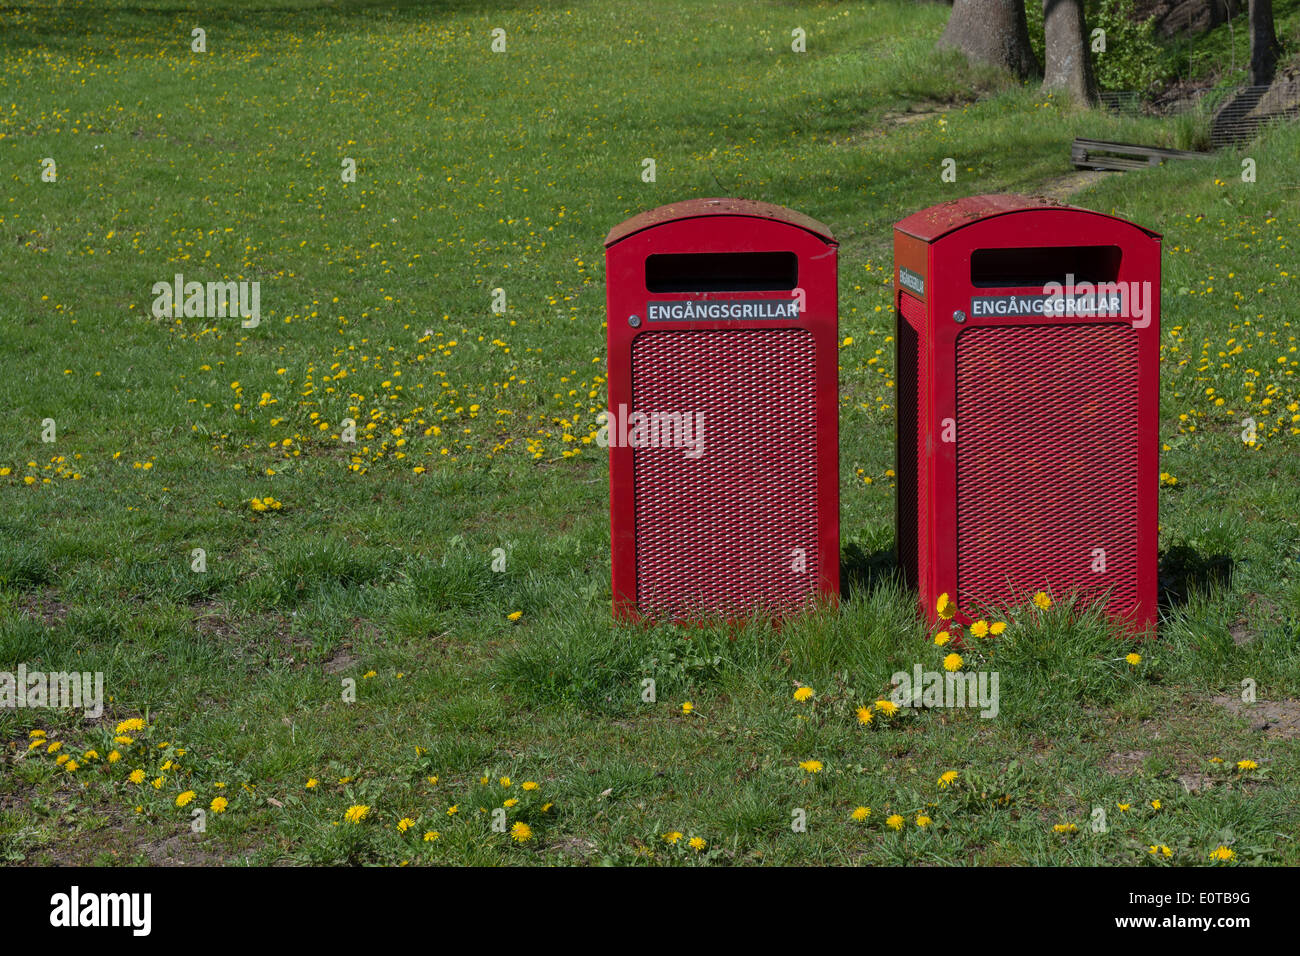 Zwei rote Mülltonnen mit Text "Engangsgrillar" für Einweg-Grill trash Elemente in einem Park, Stockholm, Schweden im Mai. Stockfoto